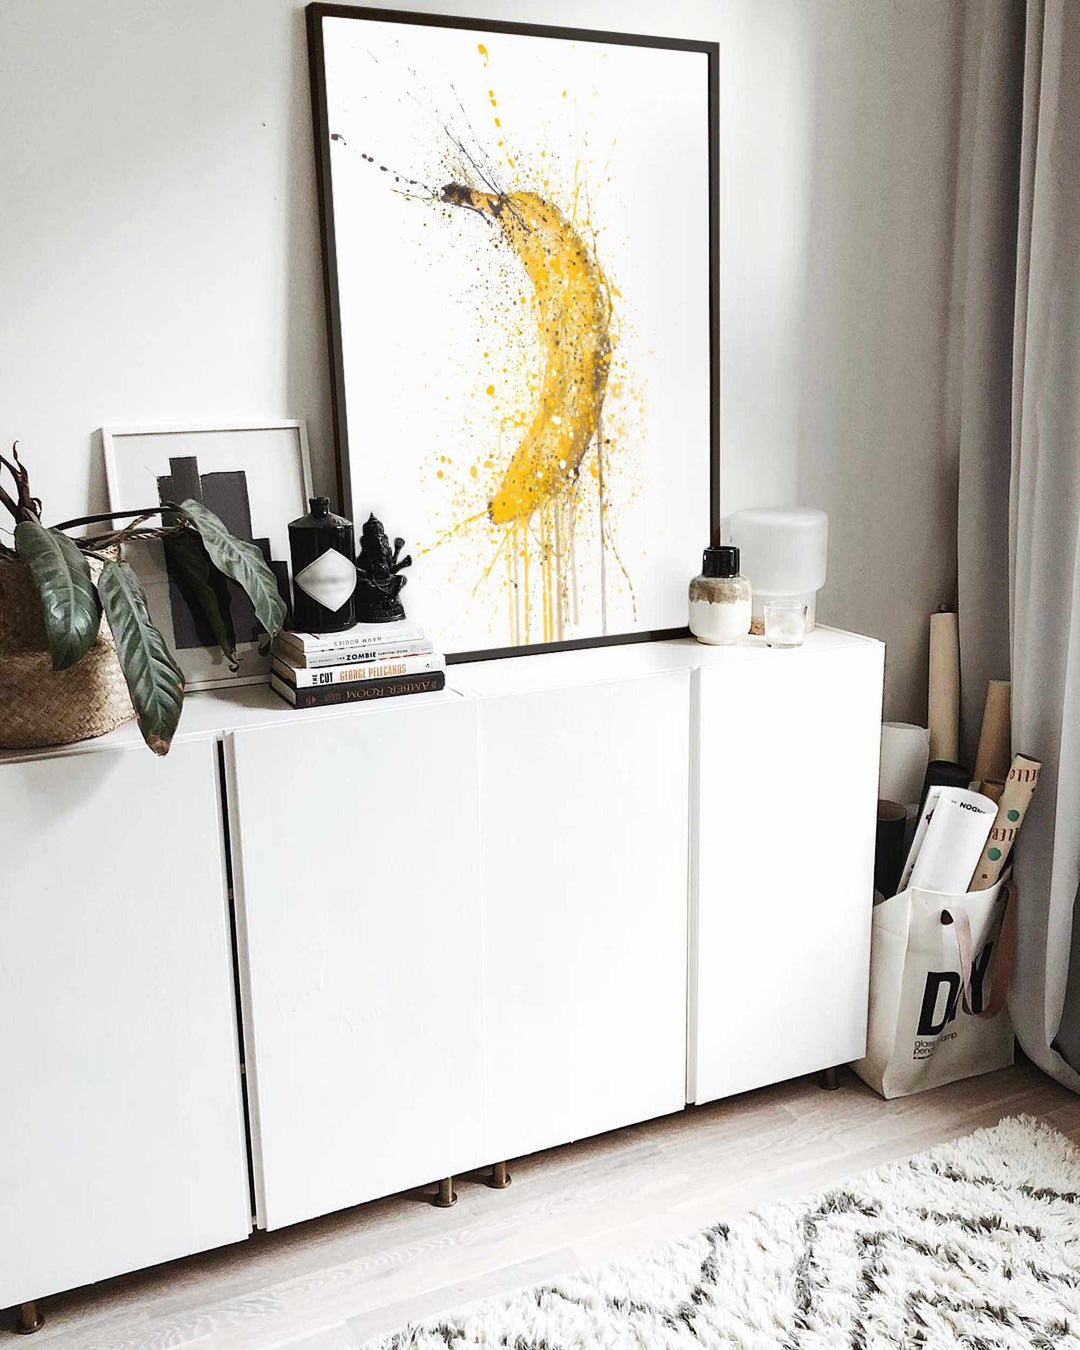 Bananen-Frucht-Wand-Kunstdruck